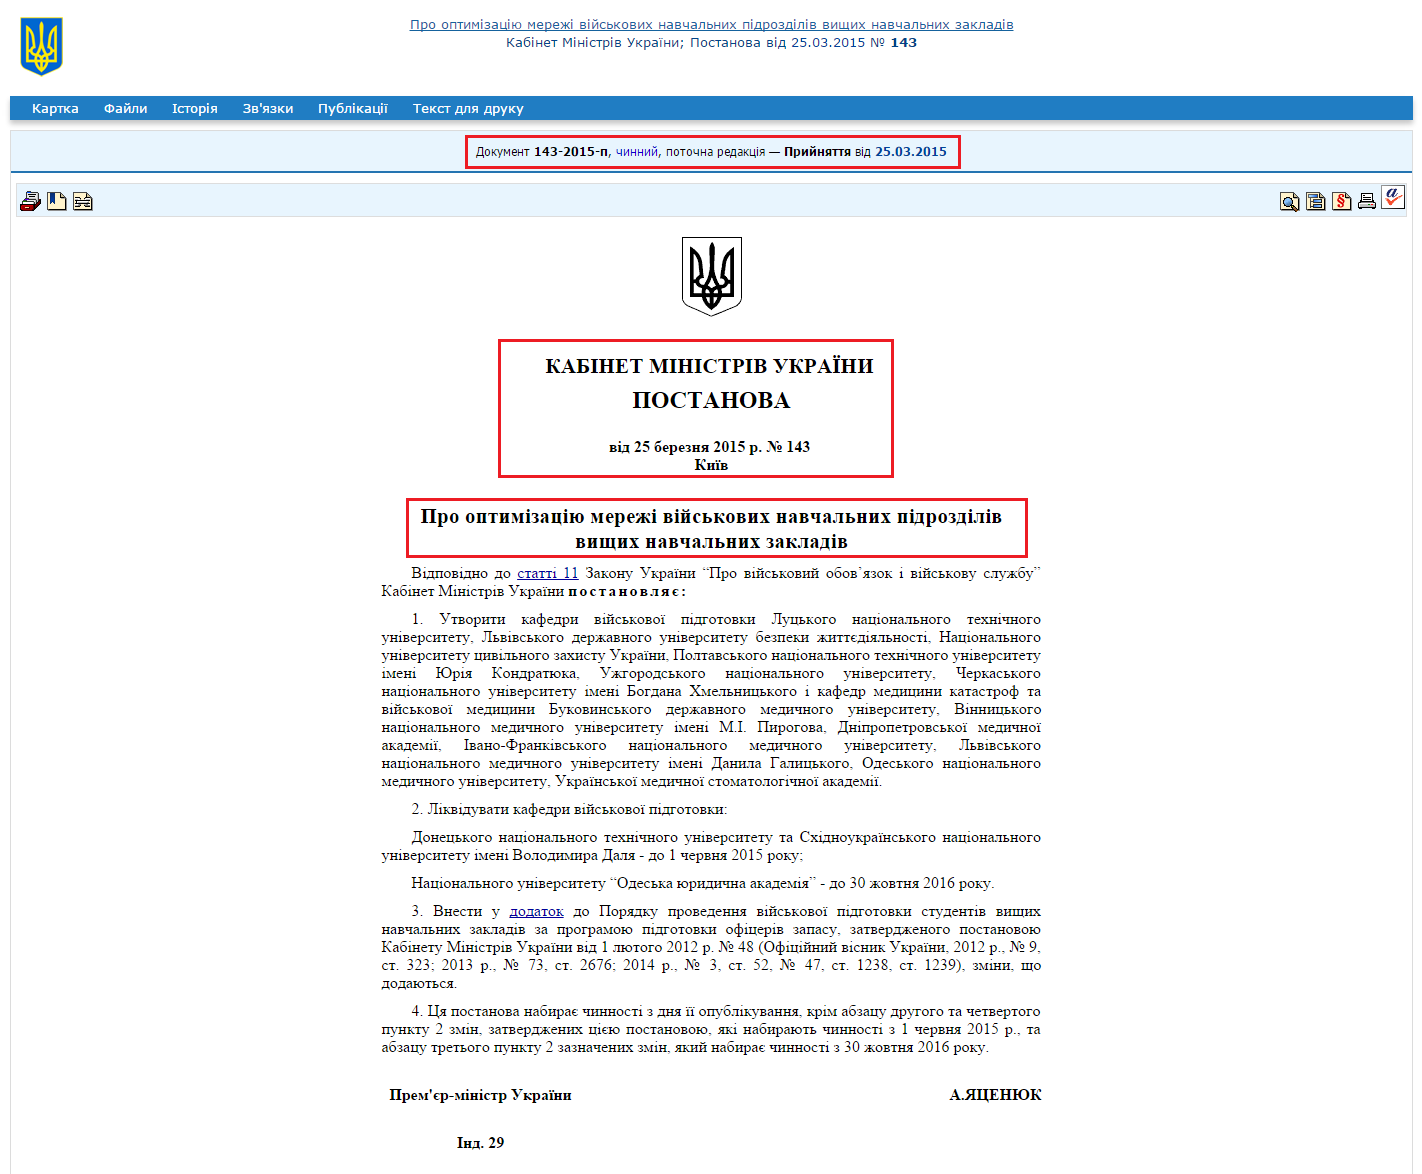 http://zakon4.rada.gov.ua/laws/show/143-2015-%D0%BF